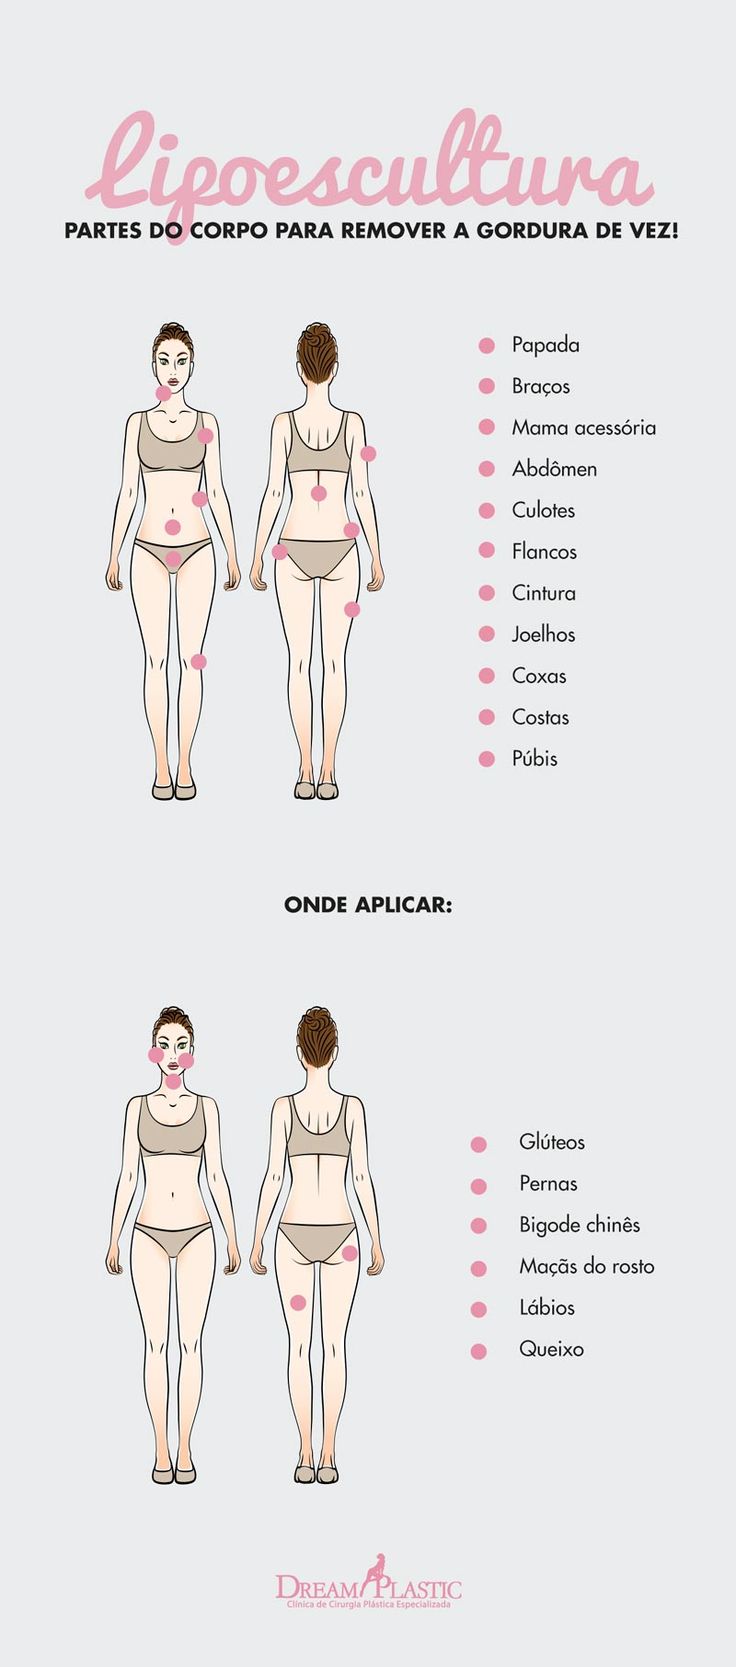 Ilustração mostrando todas as partes do corpo em que a gordura localizada pode ser retirada e reaplicada em outra região através da lipoescultura